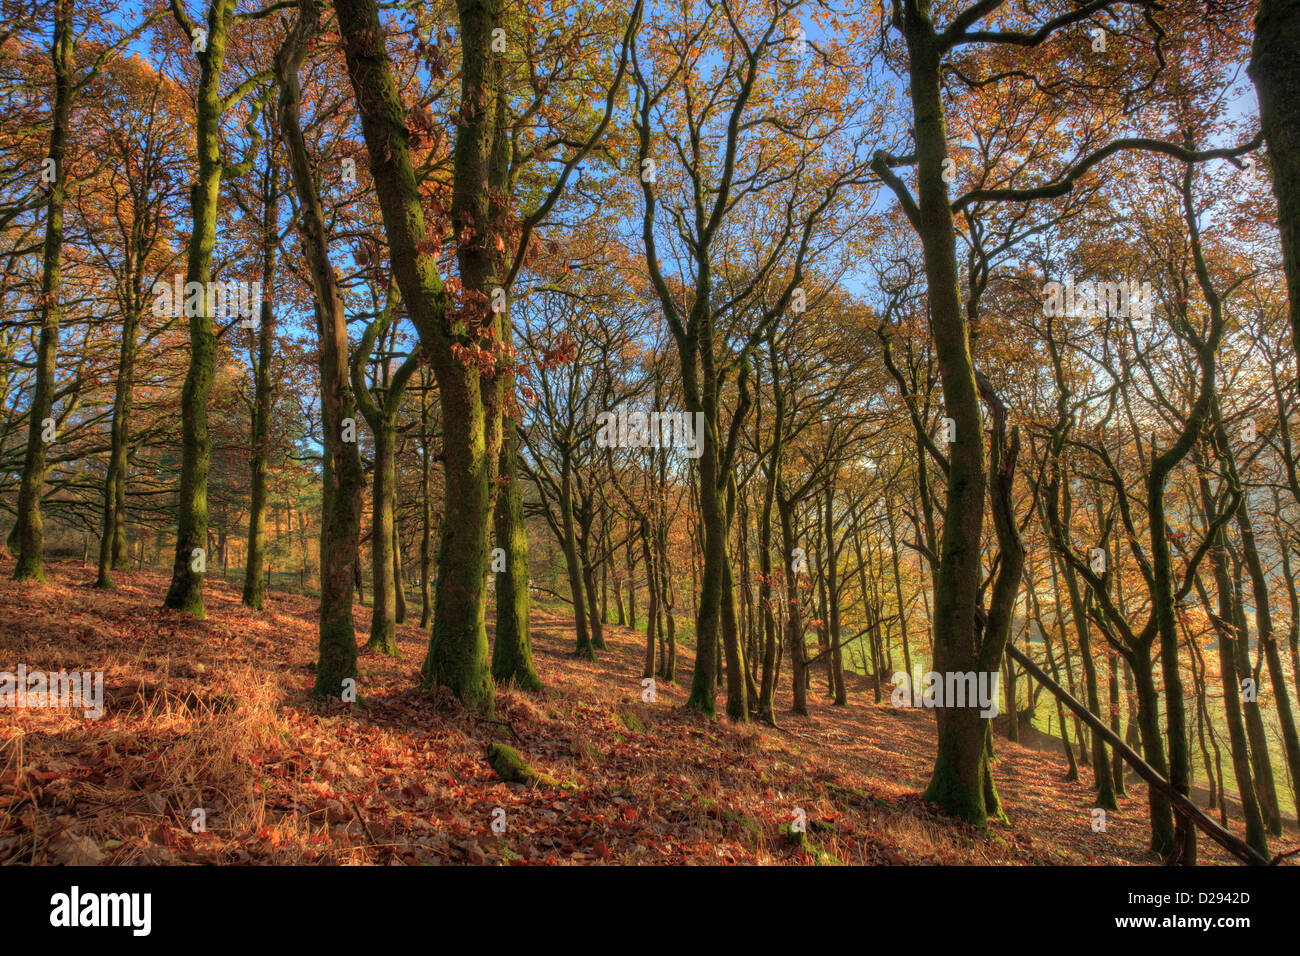 Chêne sessile (Quercus petraea) en automne. Powys, Pays de Galles. Novembre. Banque D'Images